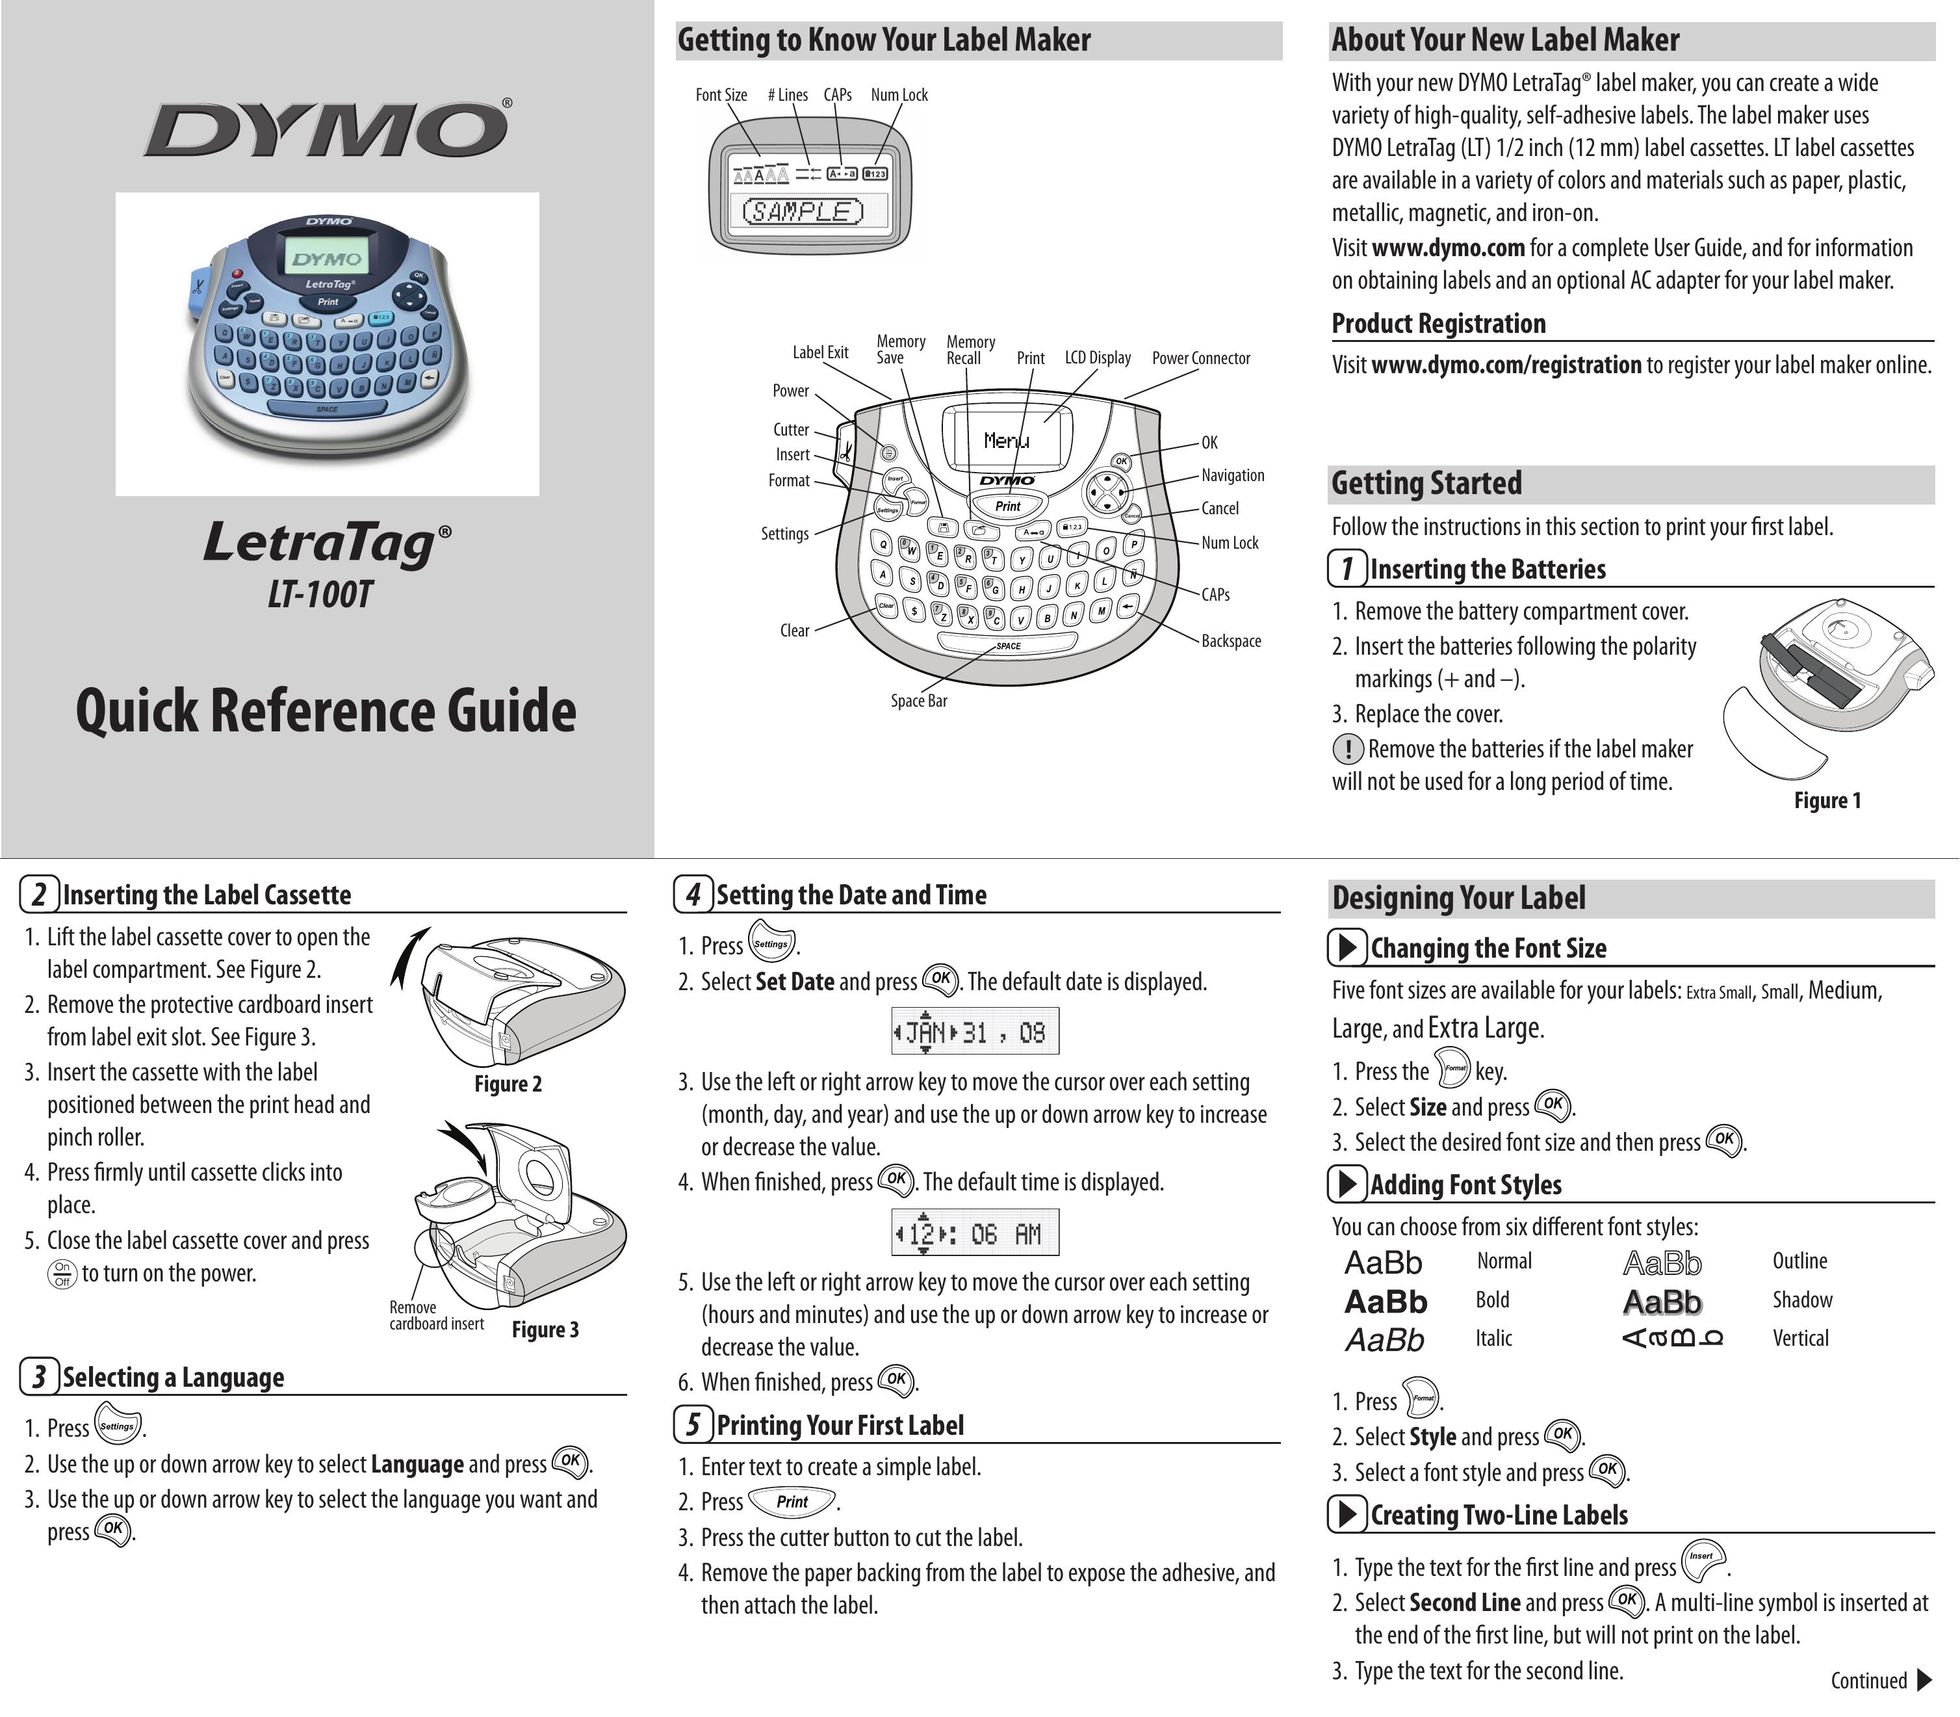 Dymo LT-100T Label Maker User Manual